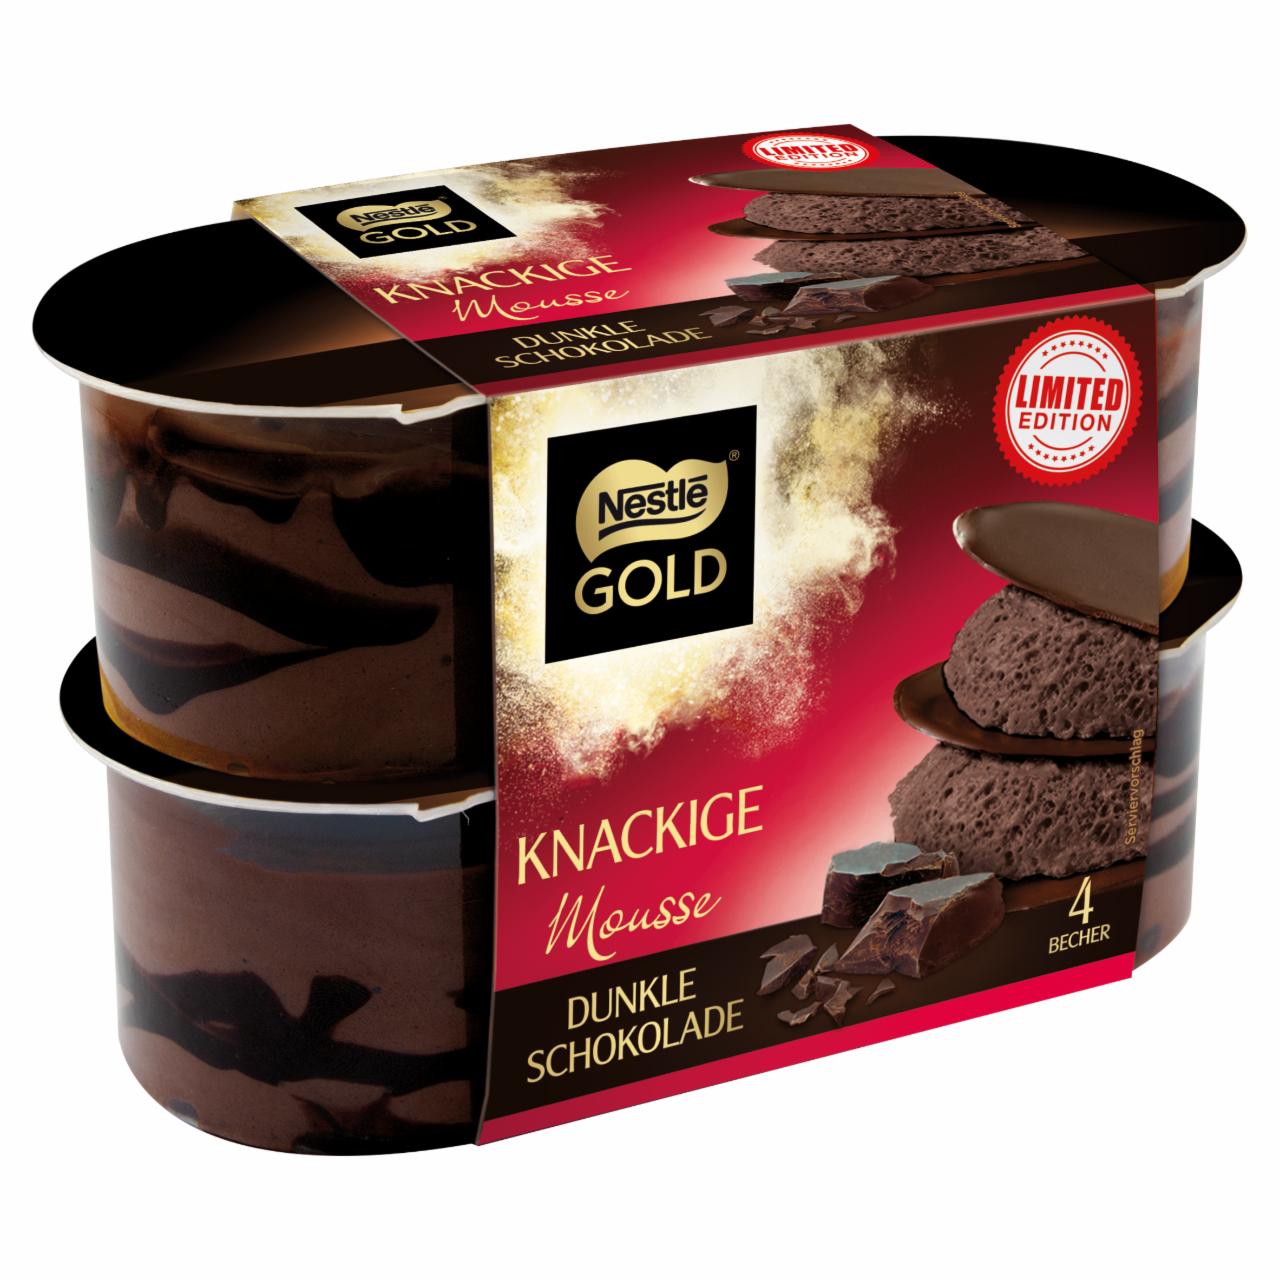 Képek - Nestlé Gold Mousse tejes desszert csokoládéval 4 x 57 g (228 g)